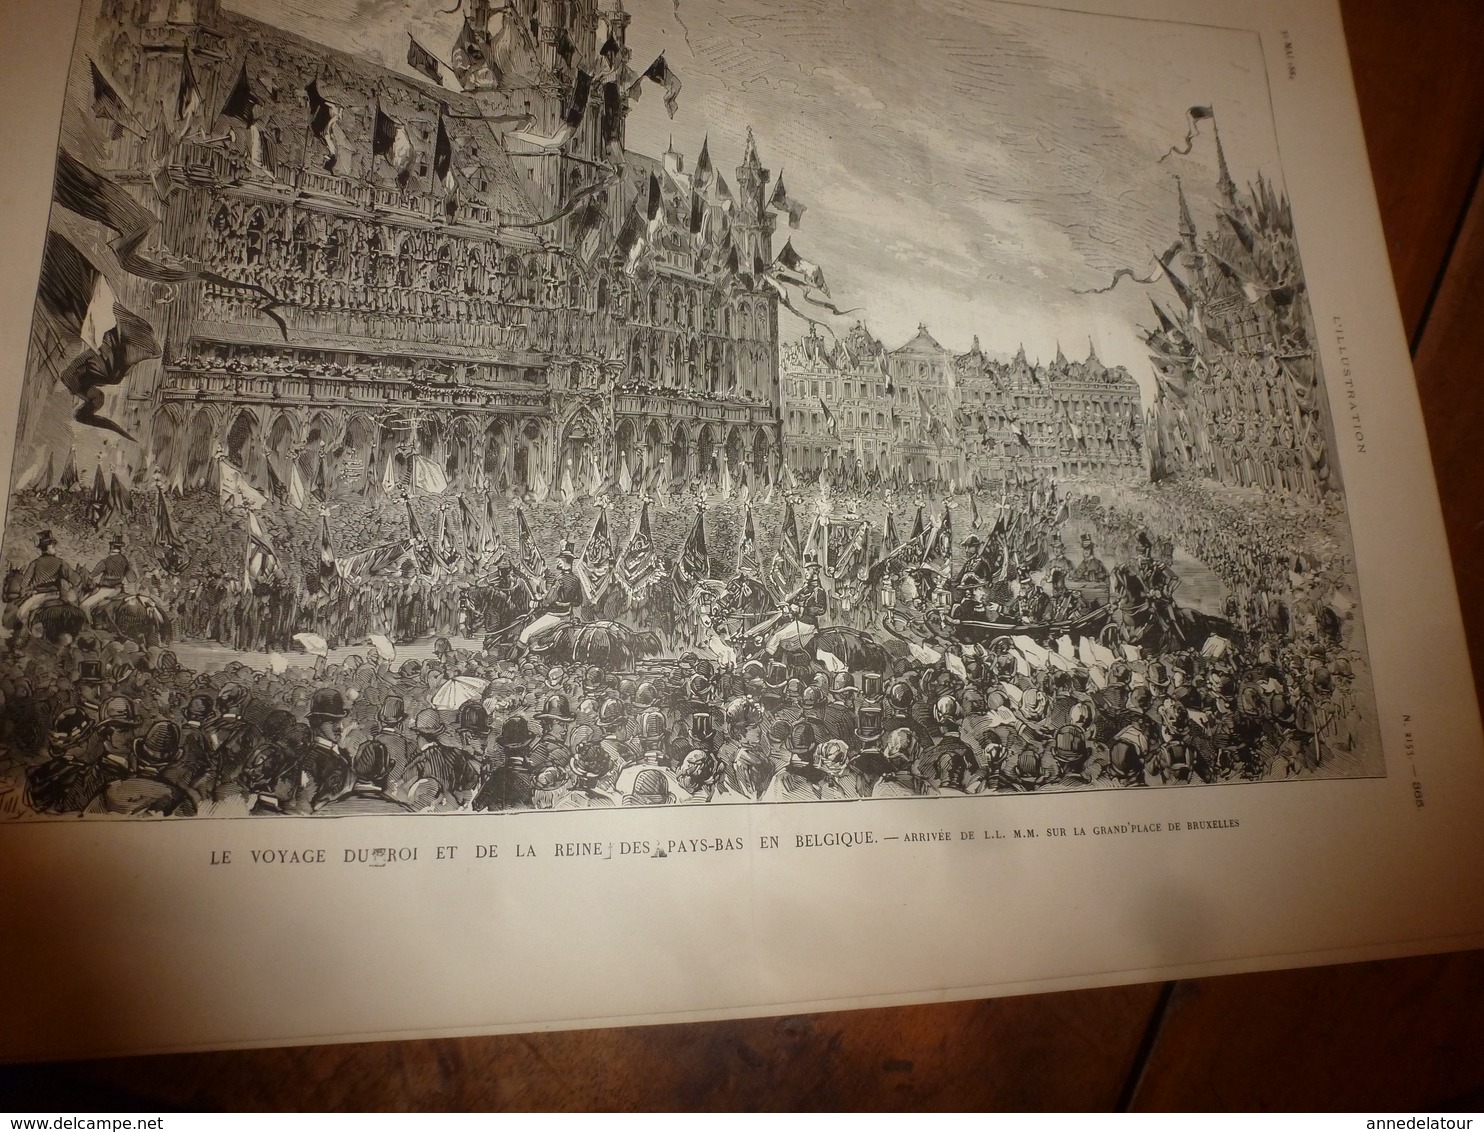 1884 L'ILLUSTRATION: Pasteur et la rage; Place de Bruxelles;Pelesh(Roum);Expo Meissonier;Fête des félibres à Sceaux;etc